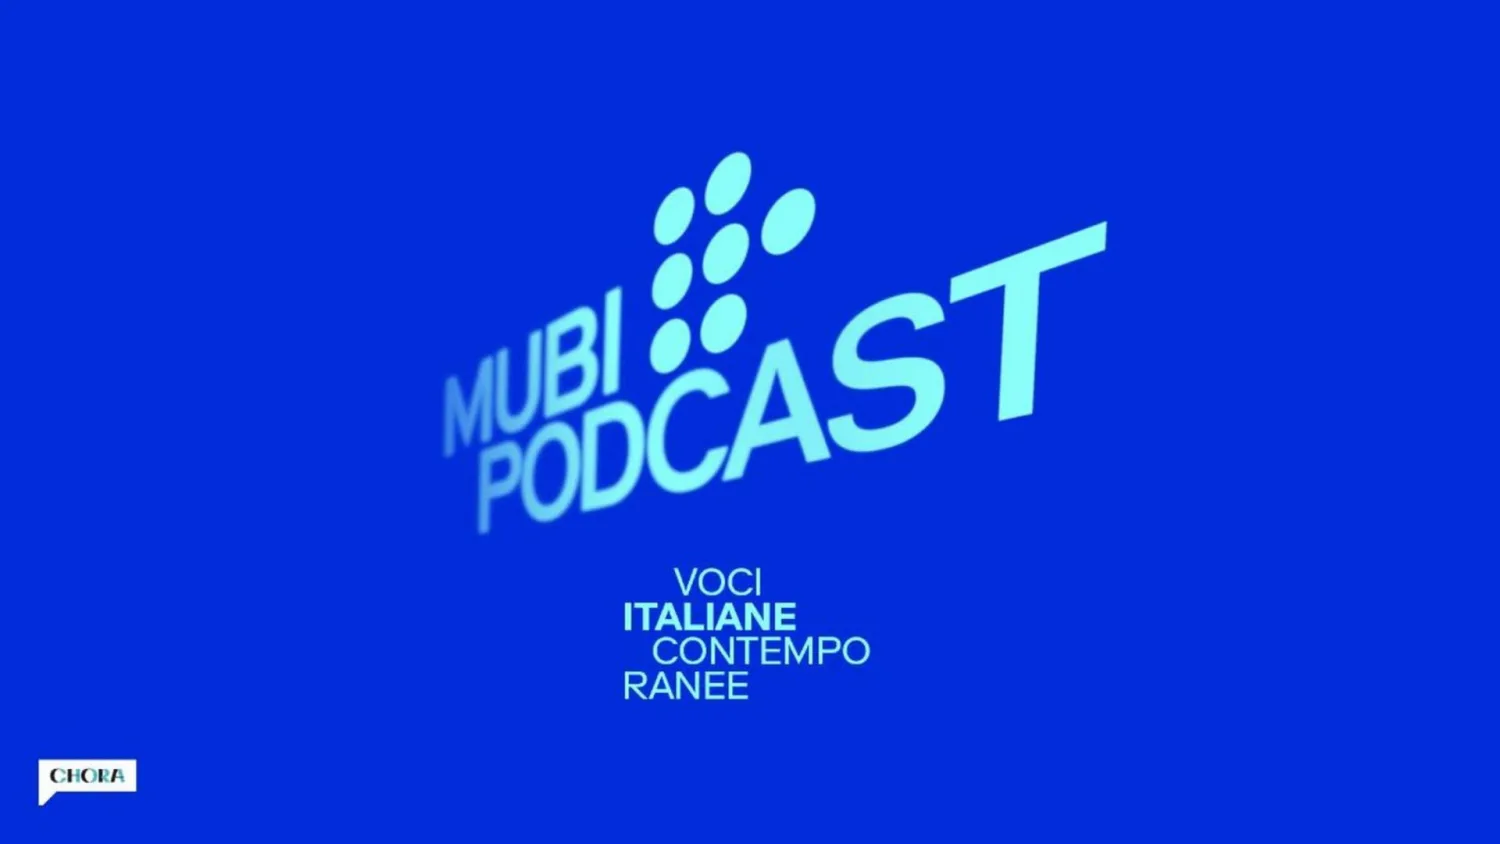 MUBI Podcast, “Voci italiane contemporanee” in collaborazione con Chora Media